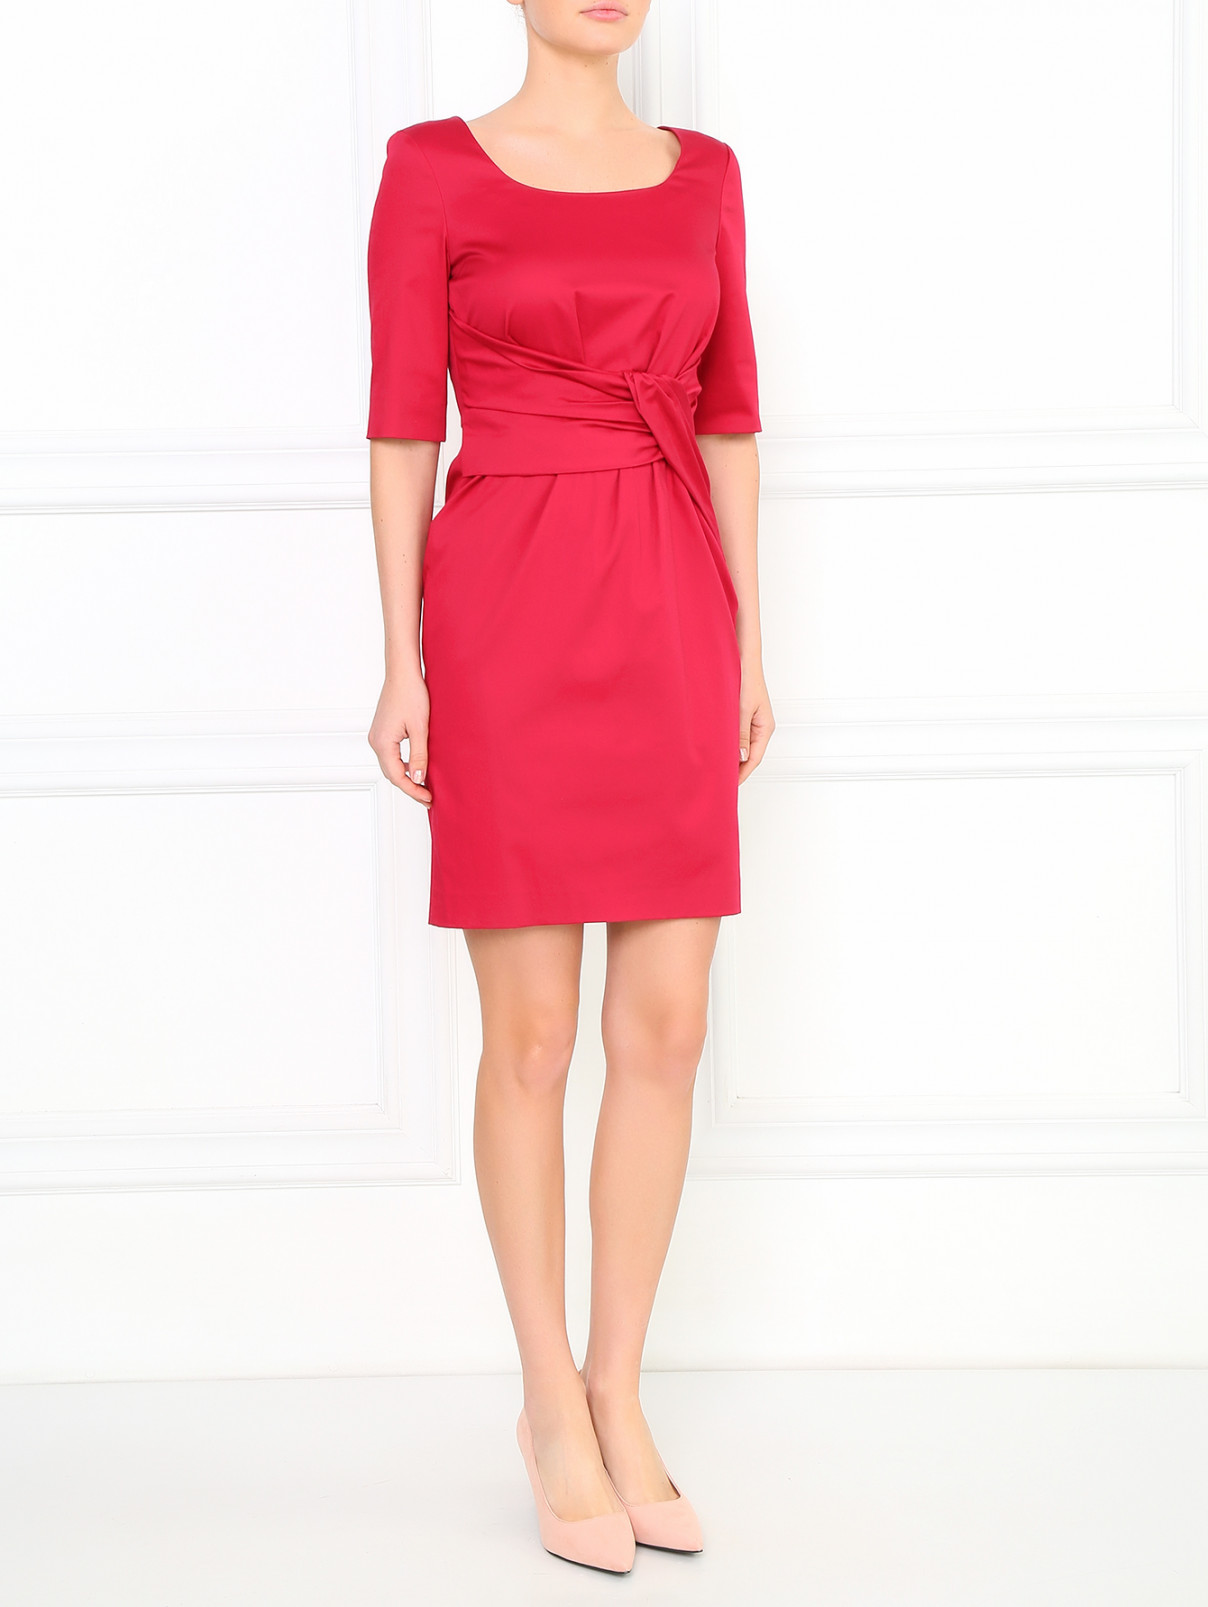 Платье-футляр с декоративной драпировкой Moschino Cheap&Chic  –  Модель Общий вид  – Цвет:  Розовый